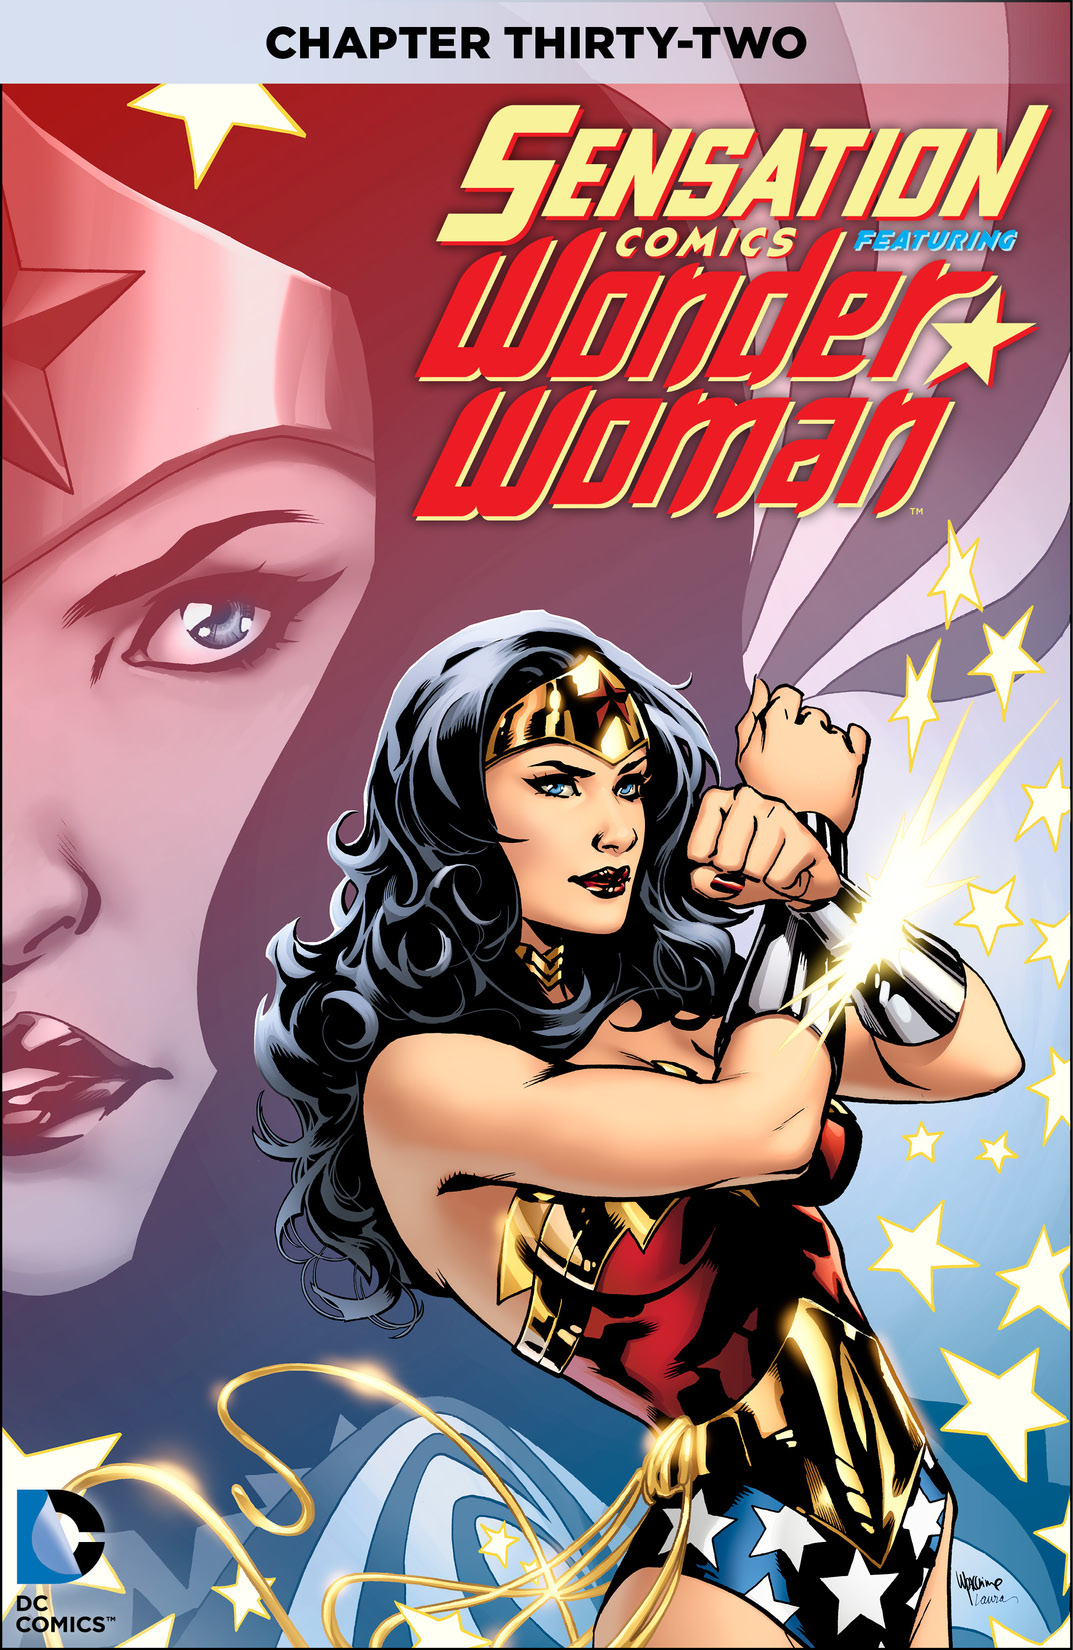 Sensation Comics Featuring Wonder Woman #32 preview images